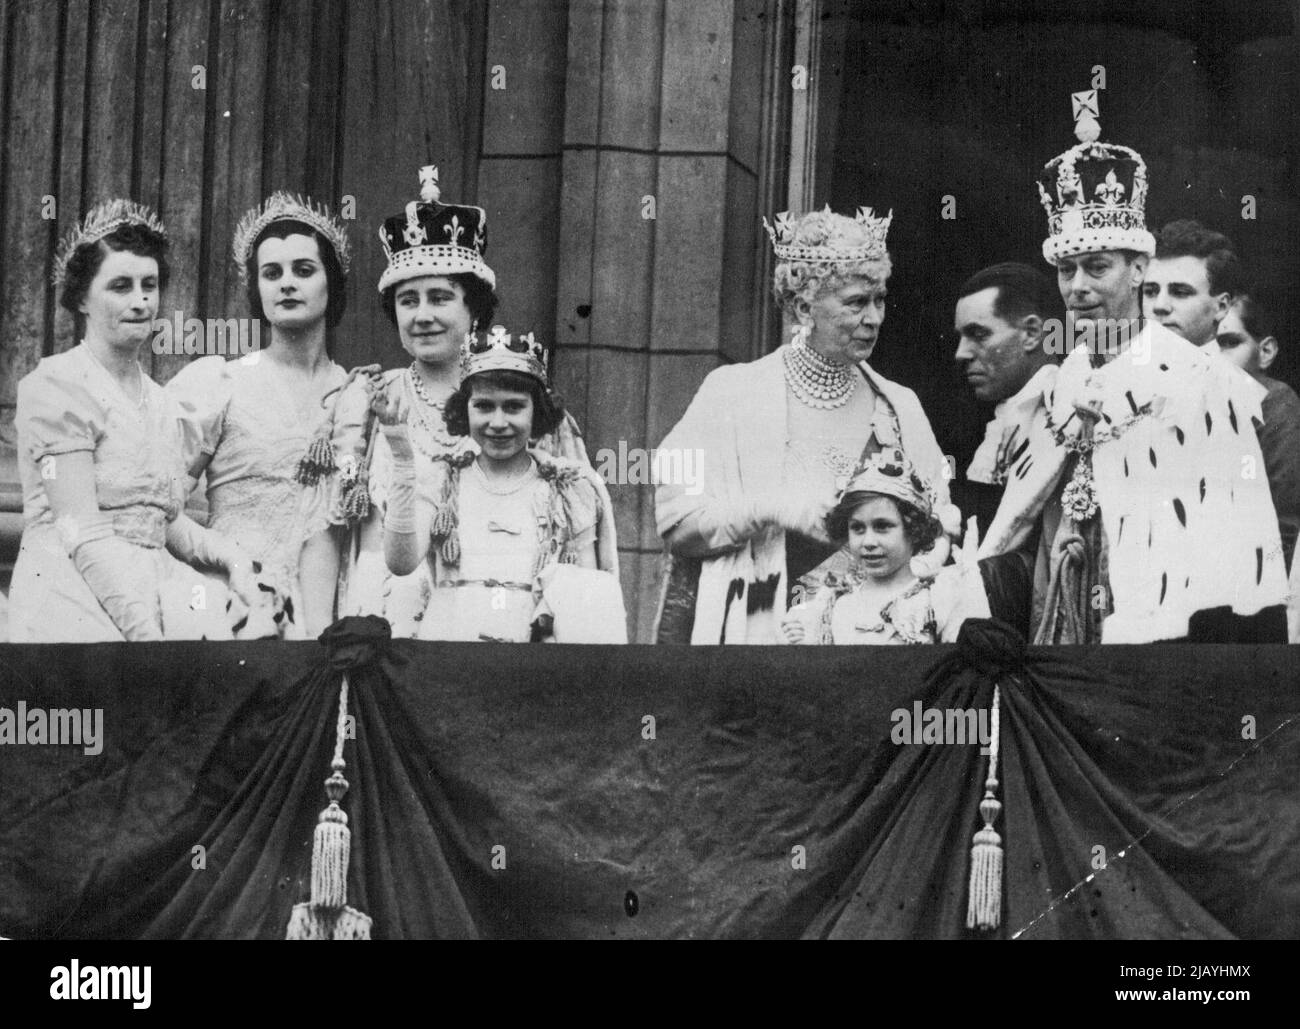 L'incoronazione di re Giorgio VI E la regina Elisabetta. Scene dopo la cerimonia . Una foto felice sul balcone di Buckingham Palace, che mostra H.M. il Re N.M. La Regina Maria e le due principesse. La regina si sposa con la famiglia dopo l'incoronazione di Giorgio VI e la regina Elisabetta. Ondeggiando è la giovane principessa ora regina Elisabetta II. Da questo balcone di Buckingham Palace, la vecchia regina ha visto gli eventi plasmare se stessi e poi passare nella storia - mentre lei vive sopra. Maggio 12, 1957. (Foto di Sport & General Press Association Limited). Foto Stock